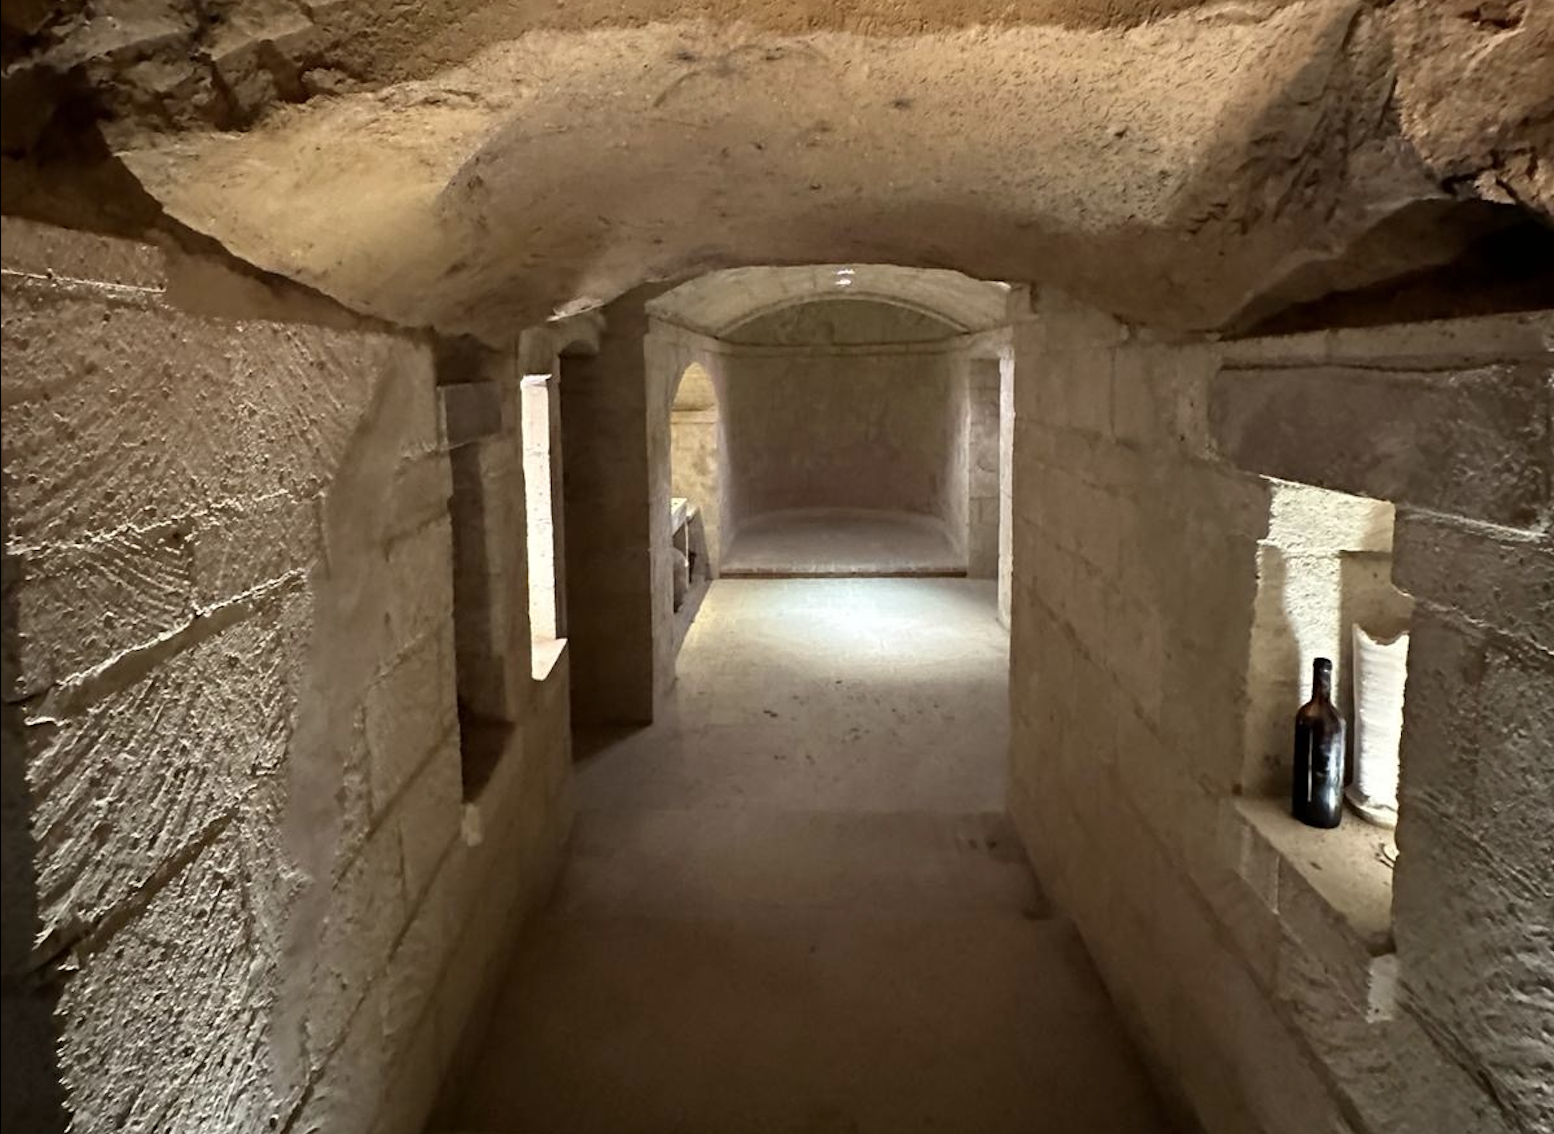 Hidden beneath the surface of Città della Pieve: the Borgo di Giano Caves